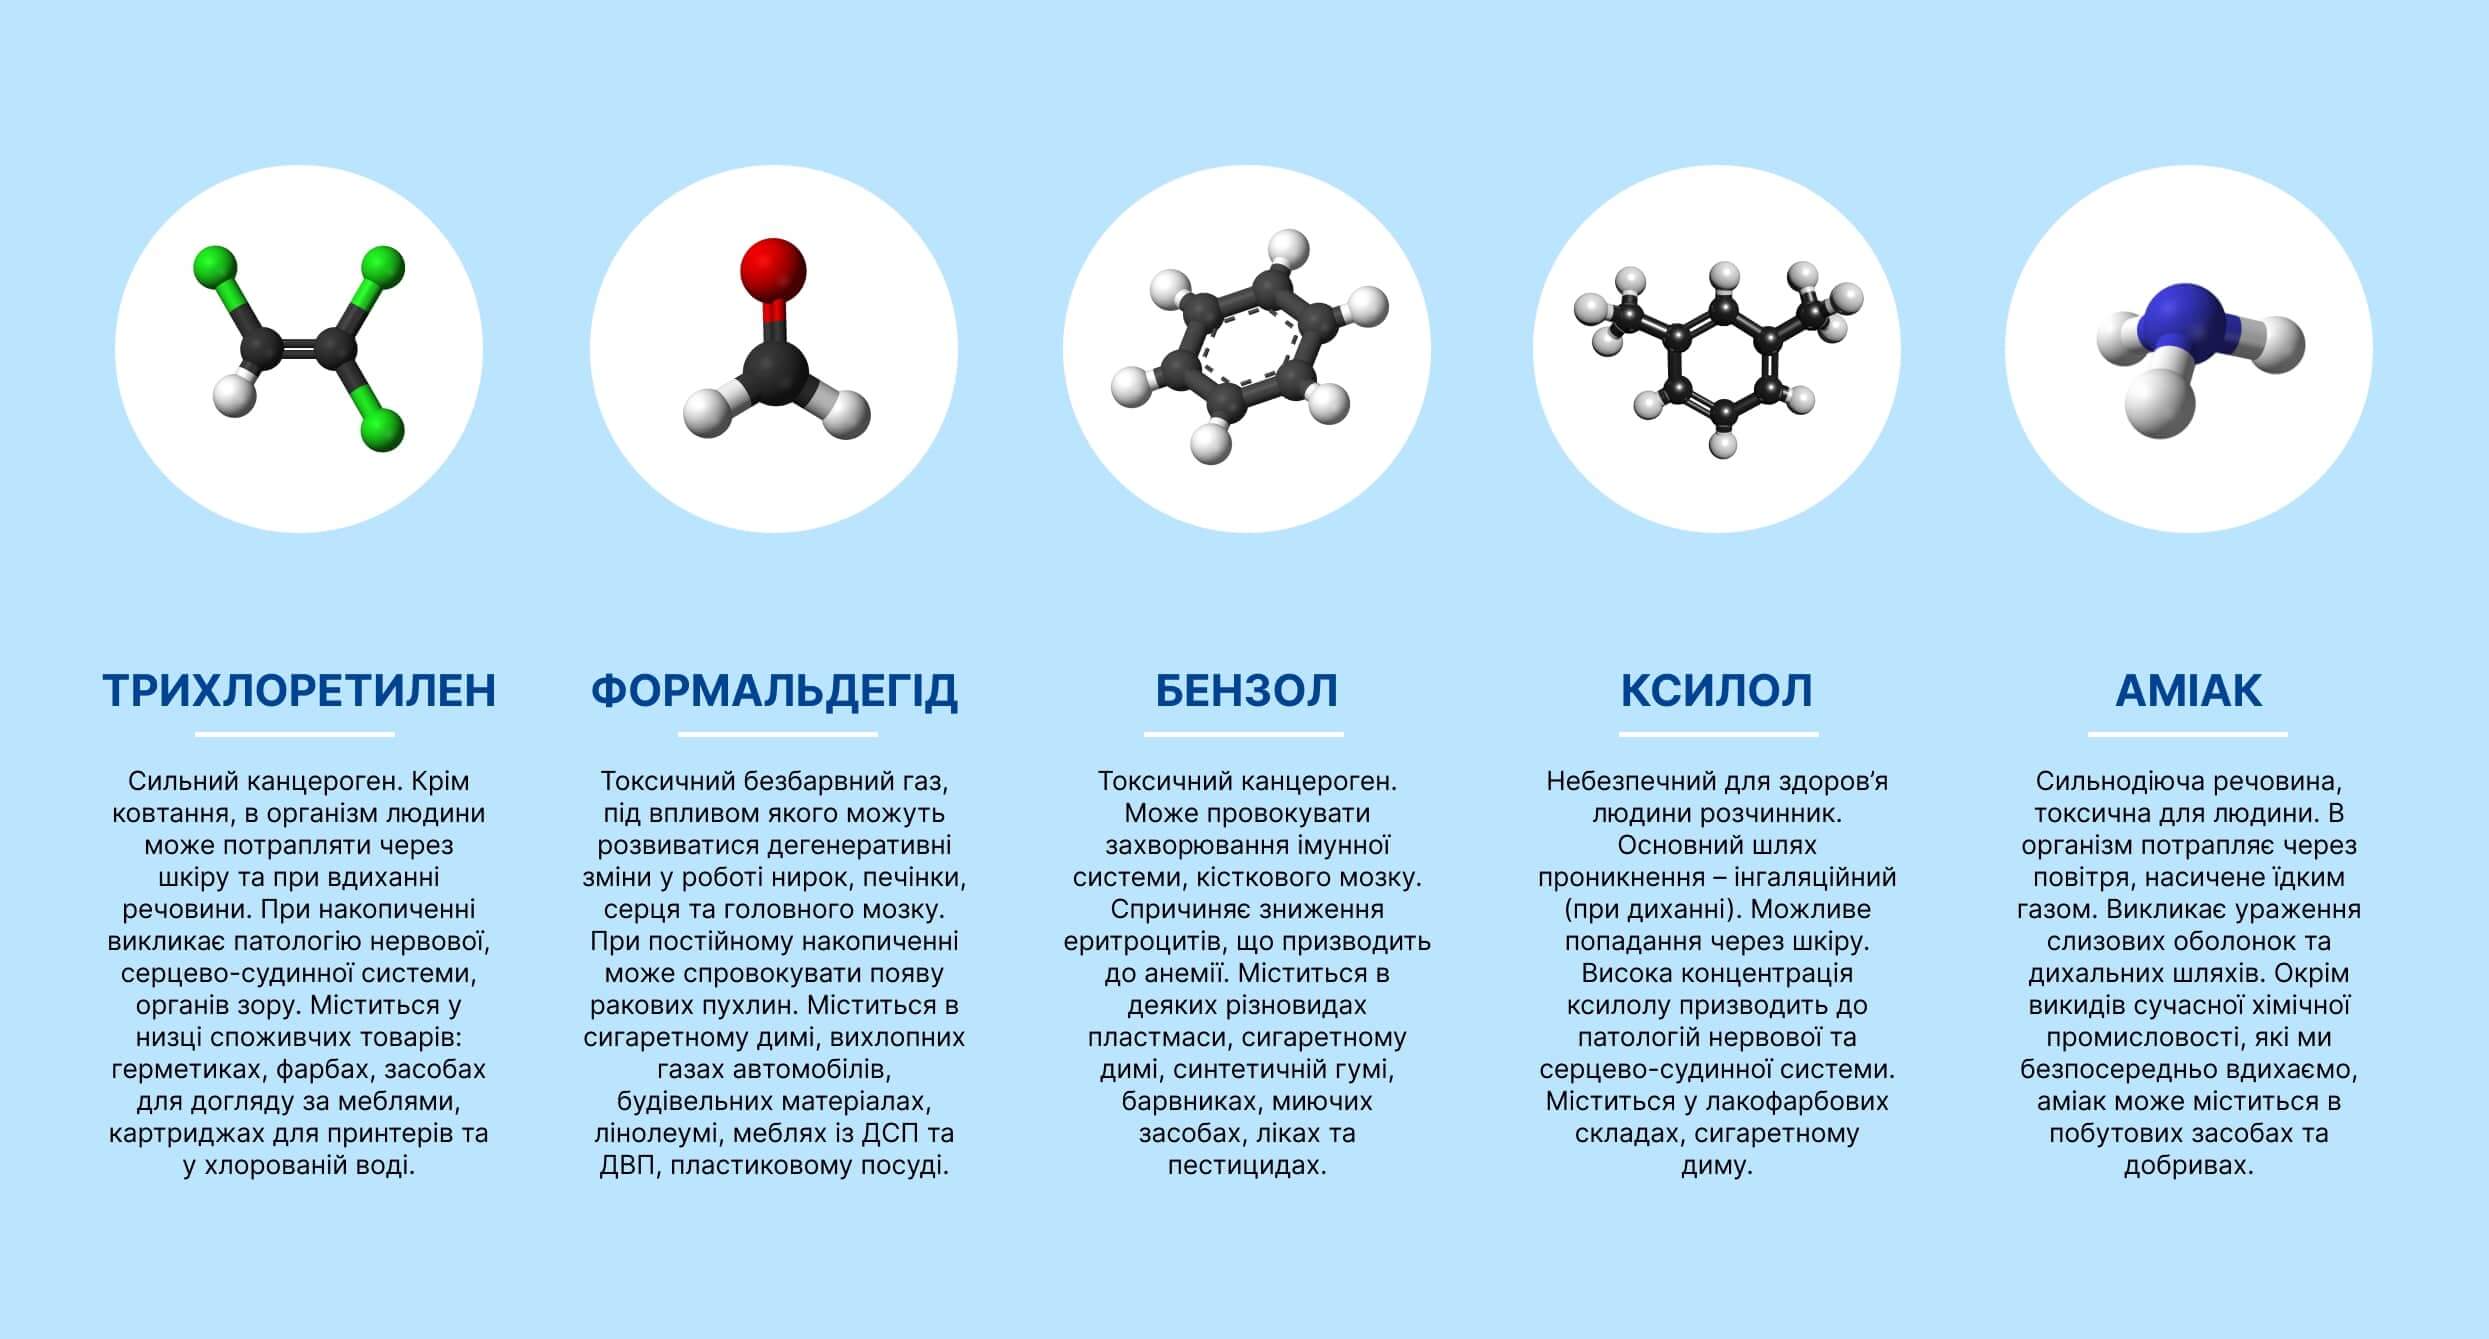 Перелік найпоширеніших токсинів та хімікатів